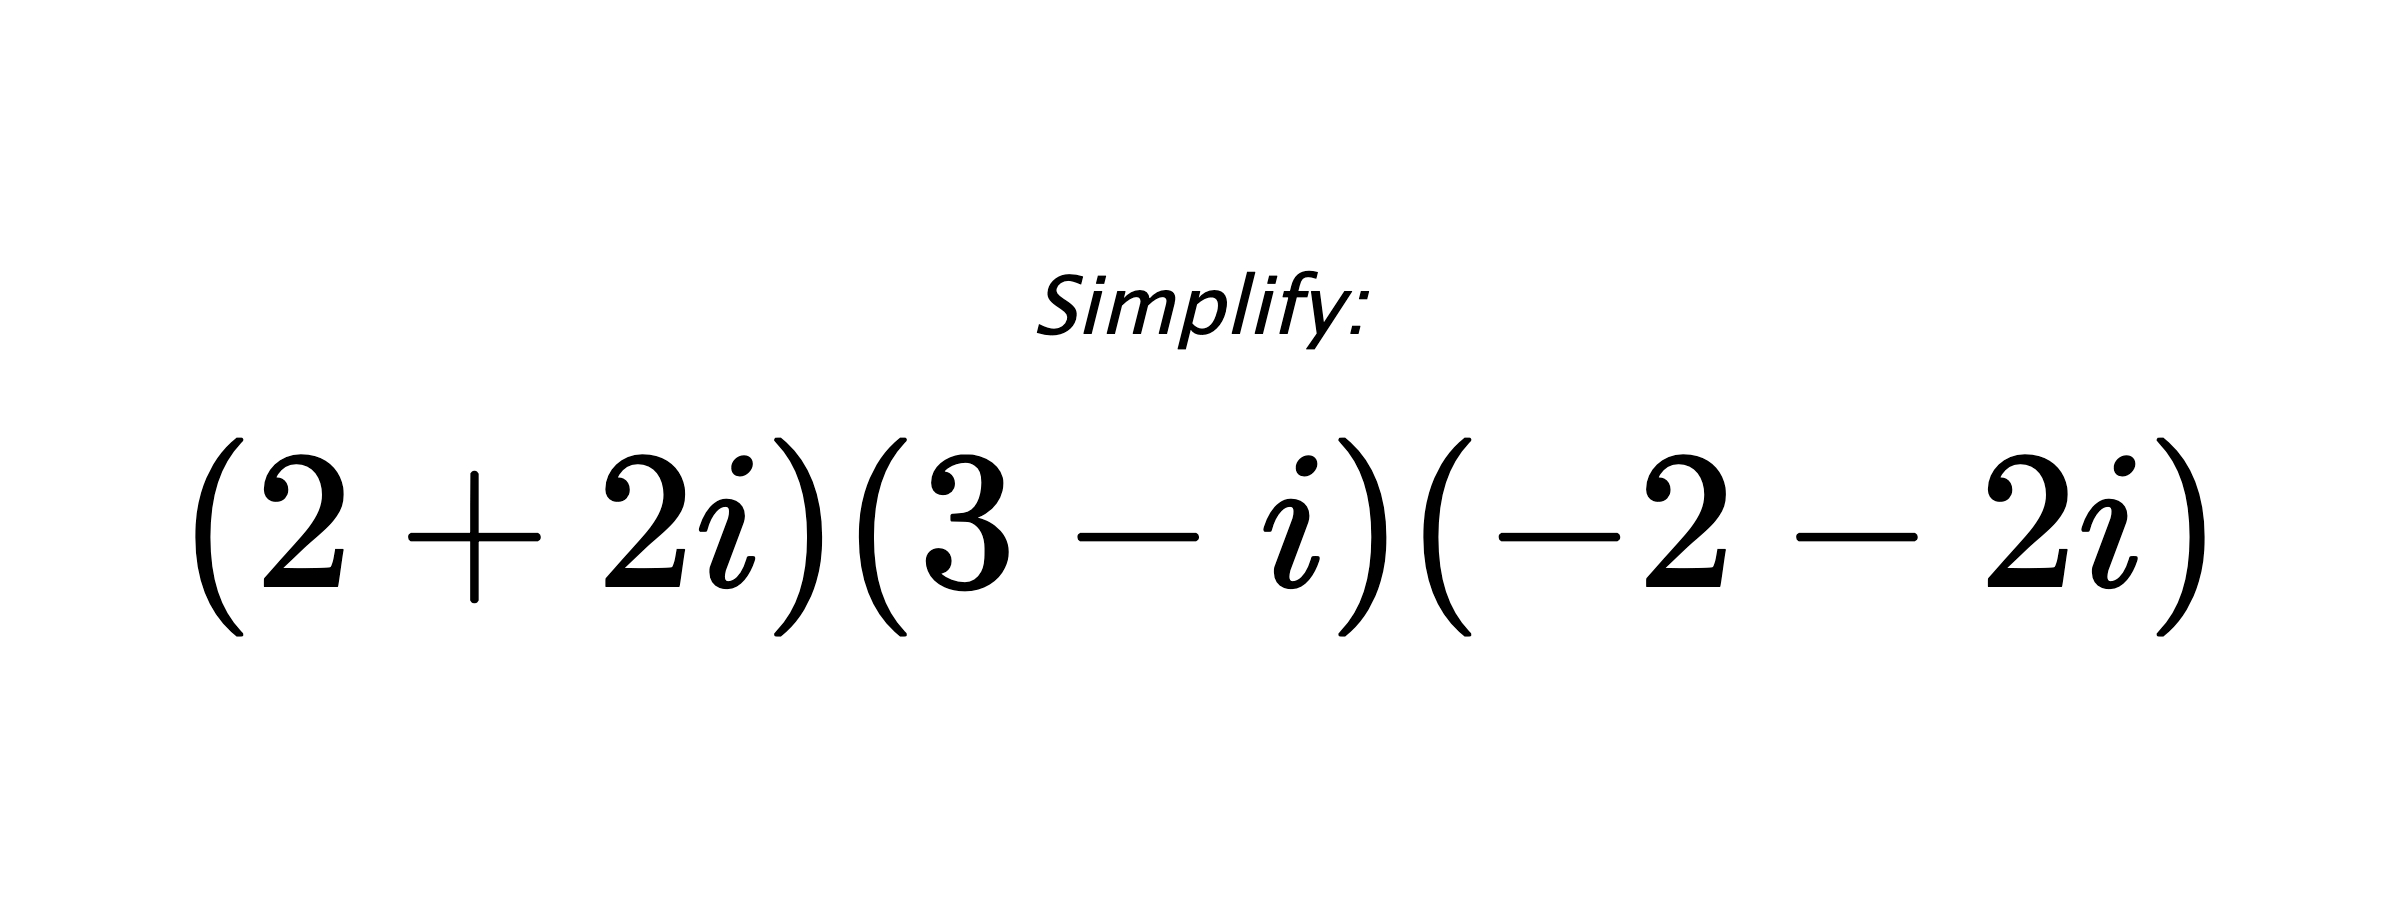 Simplify: $ (2+2i)(3-i)(-2-2i) $